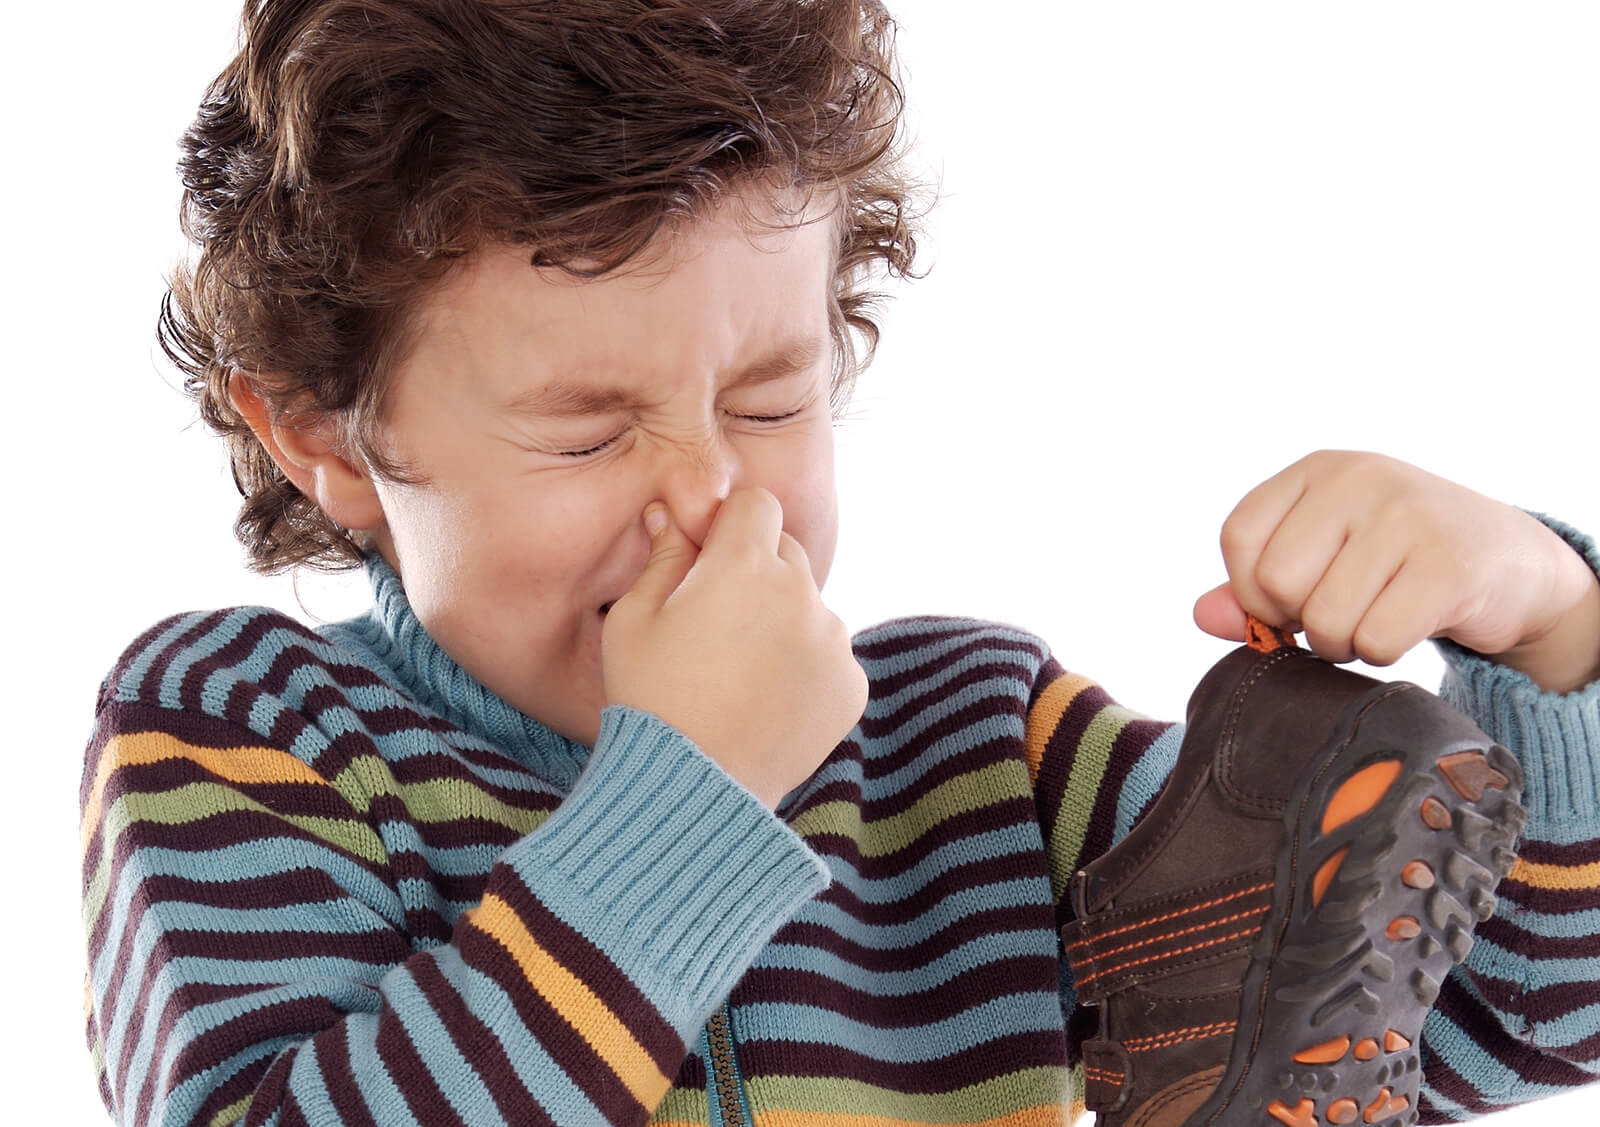 Enfant avec le nez bouché car ses chaussures sentent très mauvais.